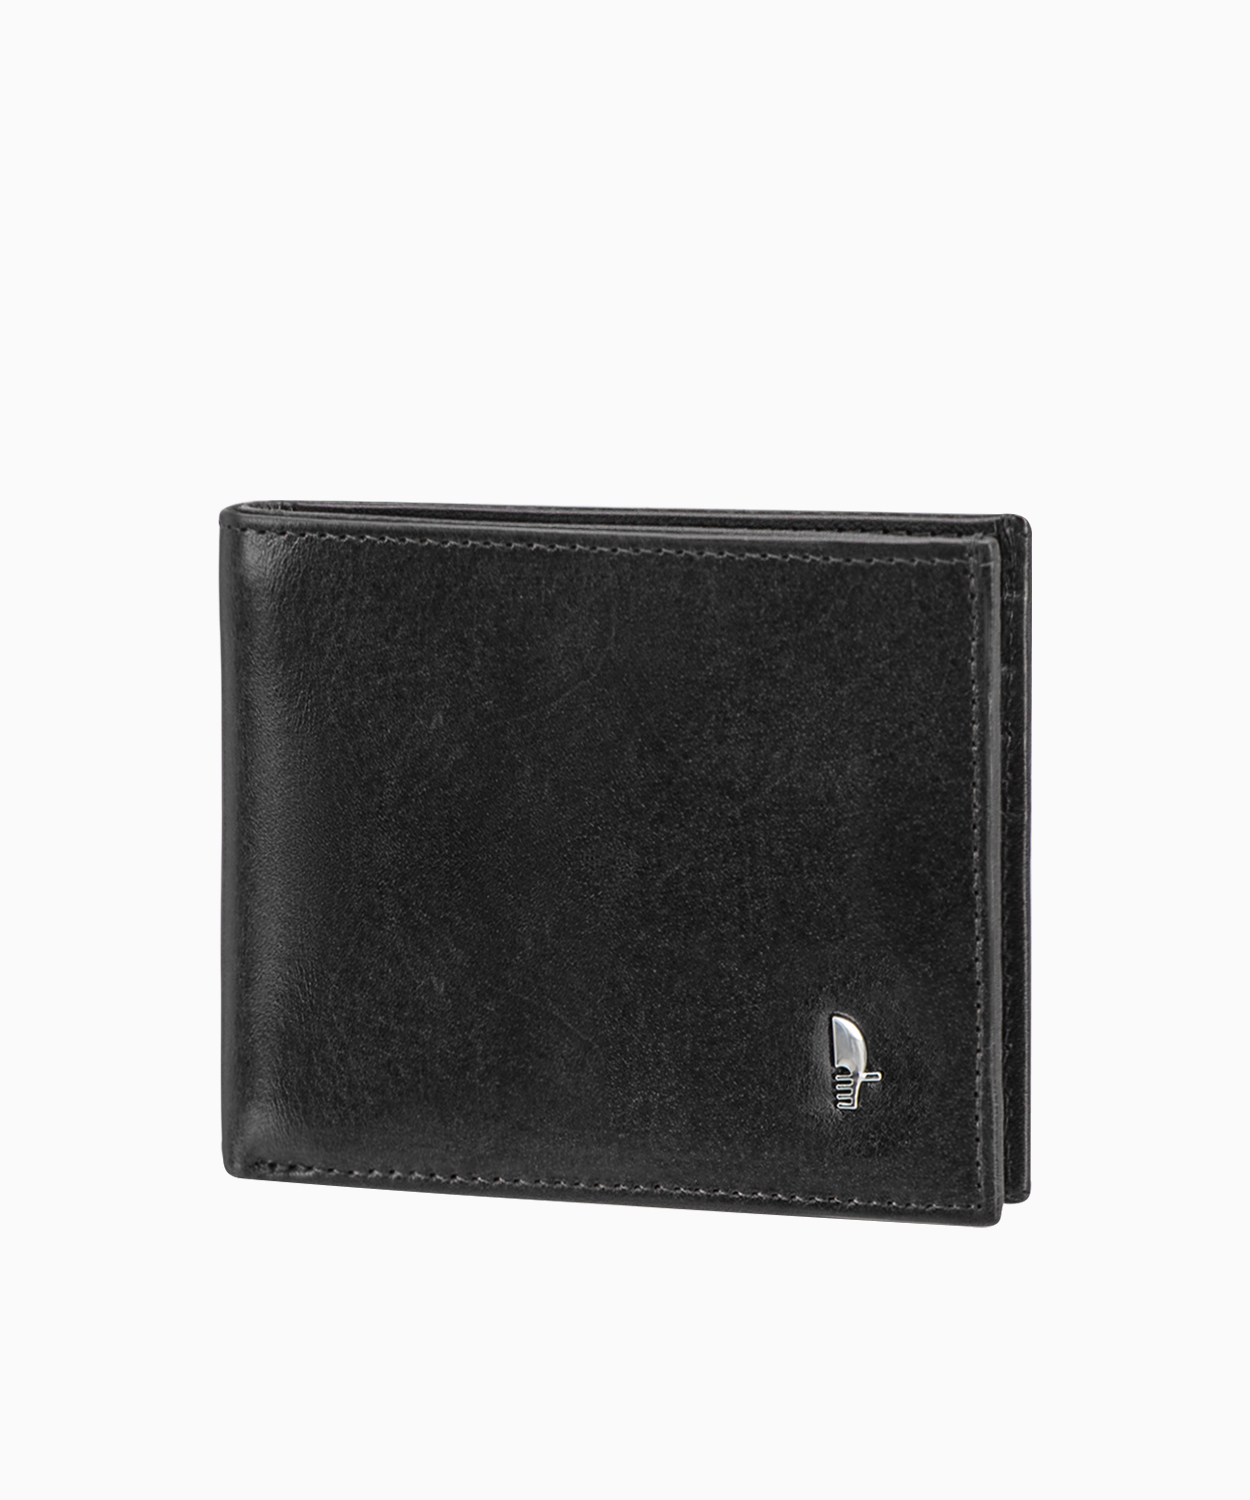 PUCCINI Skórzany portfel męski w kolorze czarnym